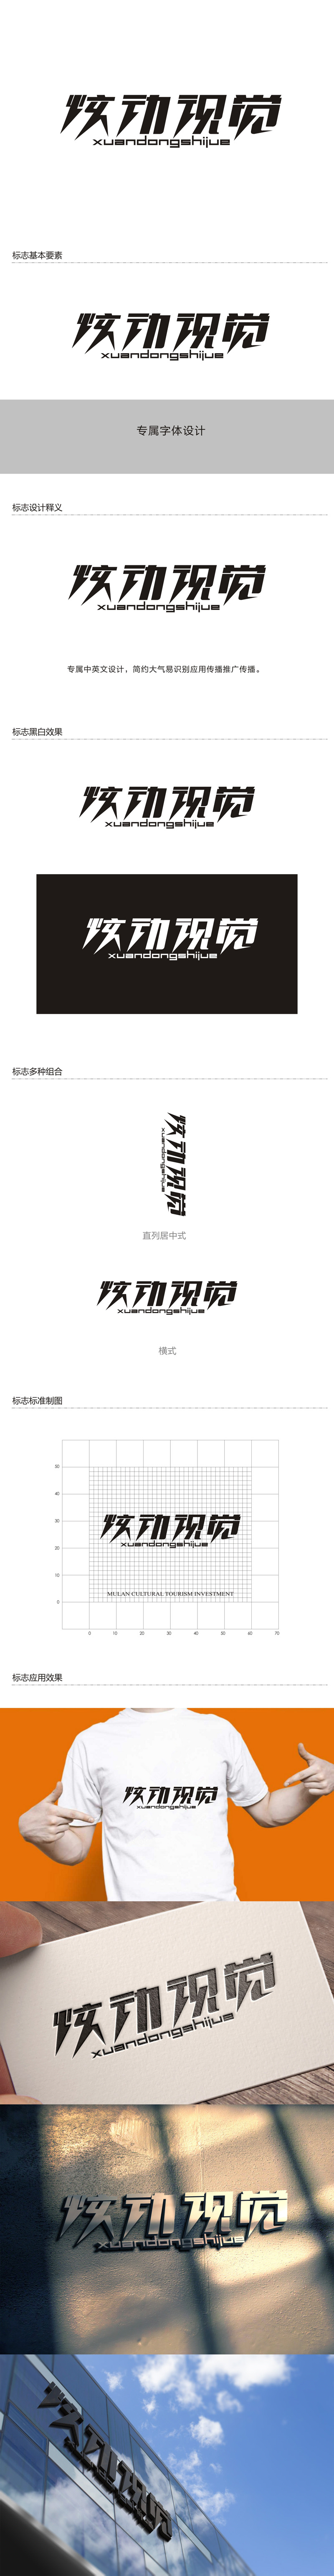 杨占斌的炫动视觉logo设计